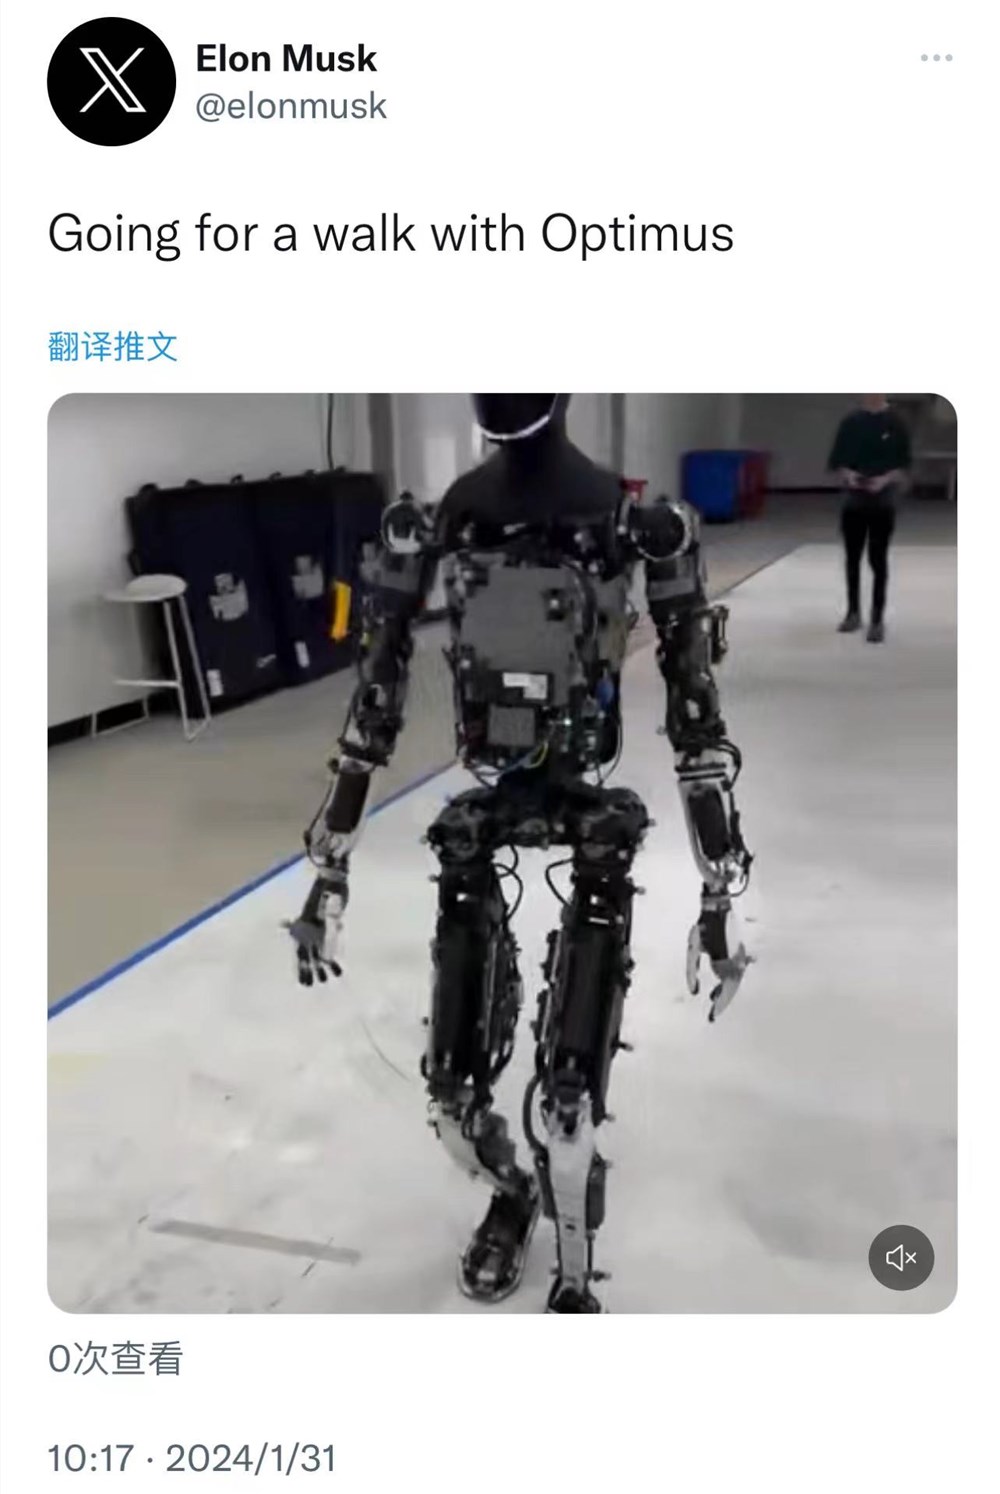 马斯克晒机器人走路视频 称“要去和擎天柱散步”